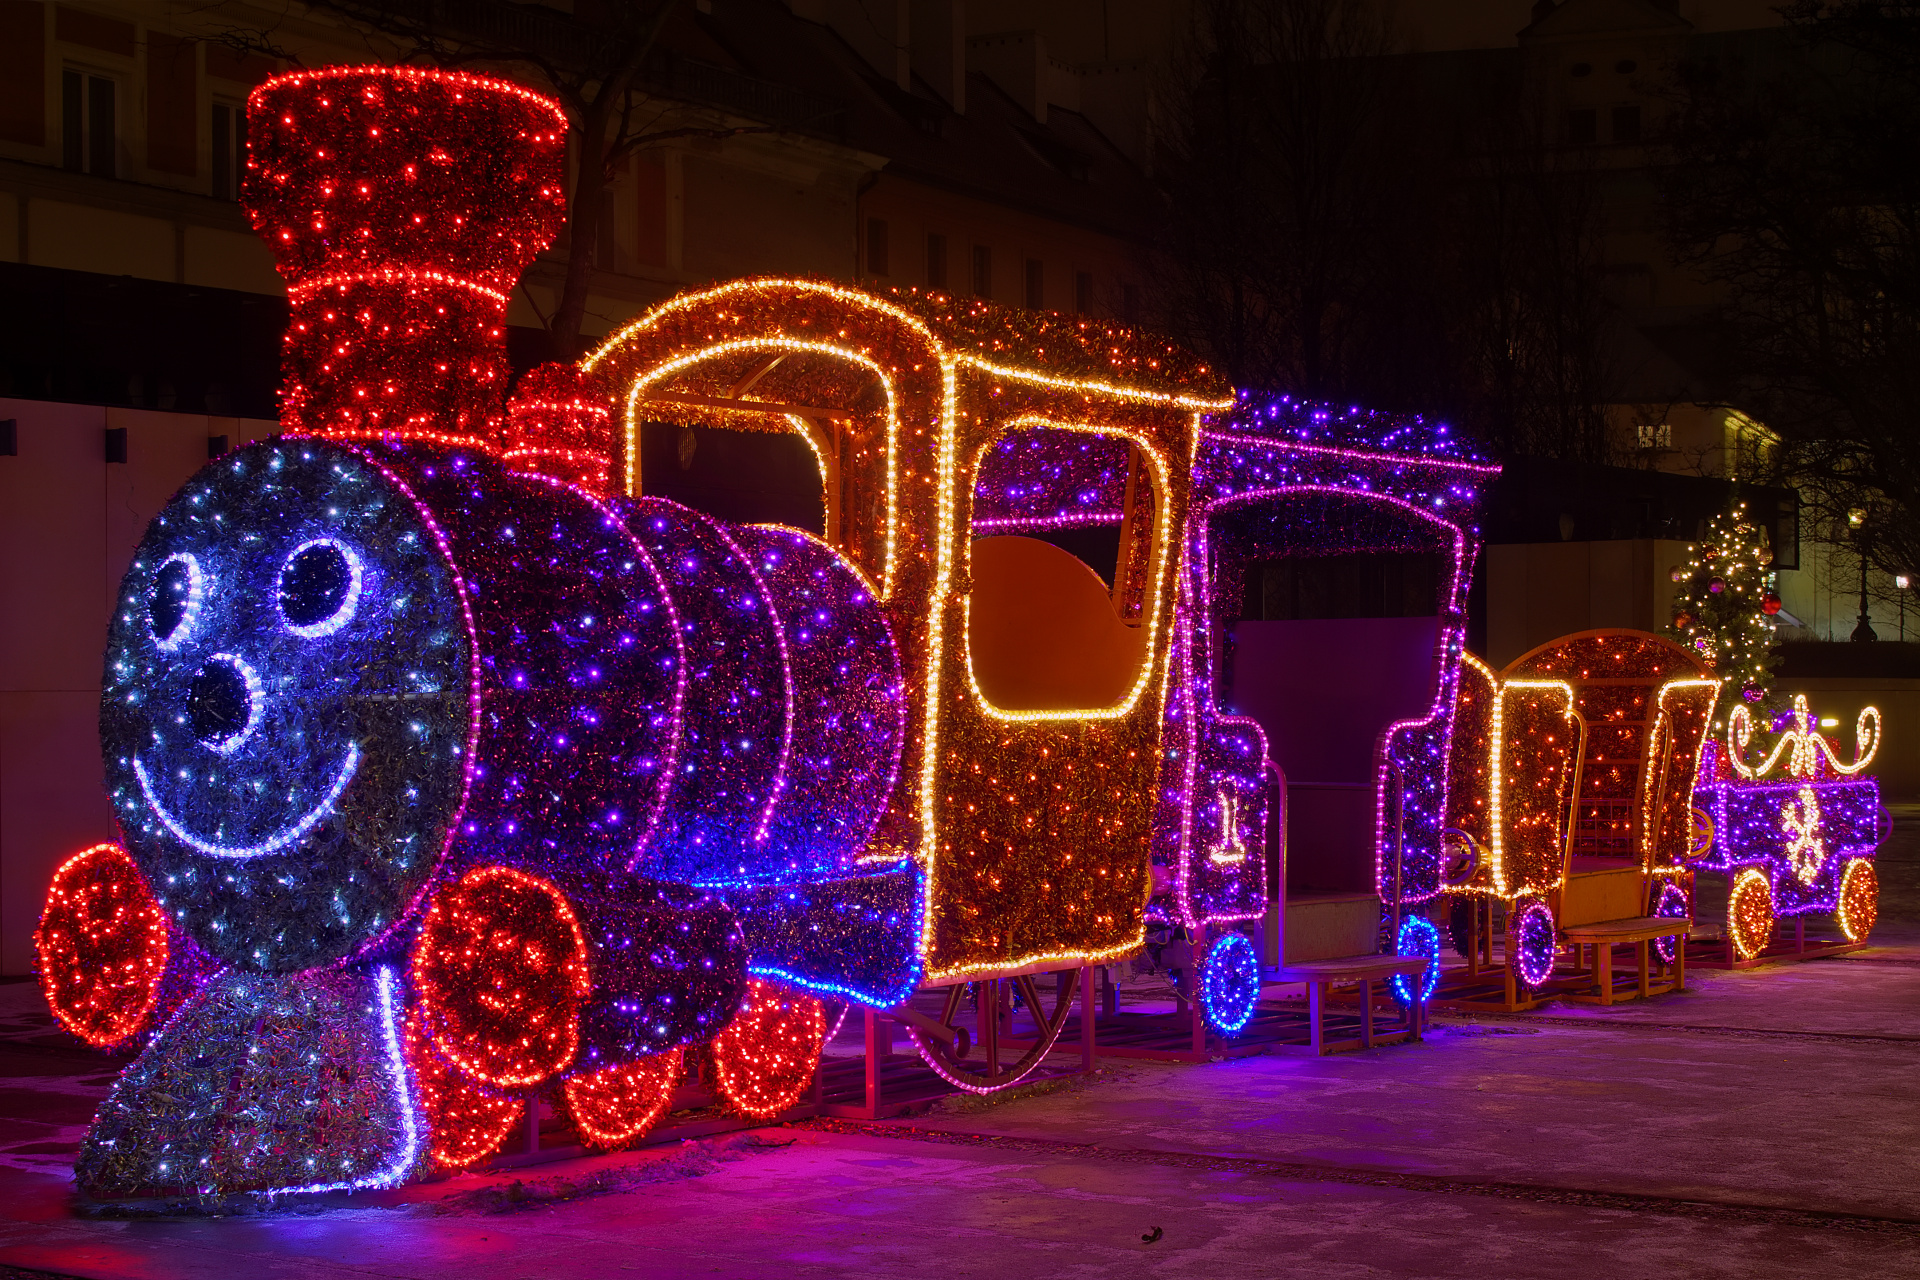 Skwer HC Hoovera (Warsaw » Christmas Illumination)